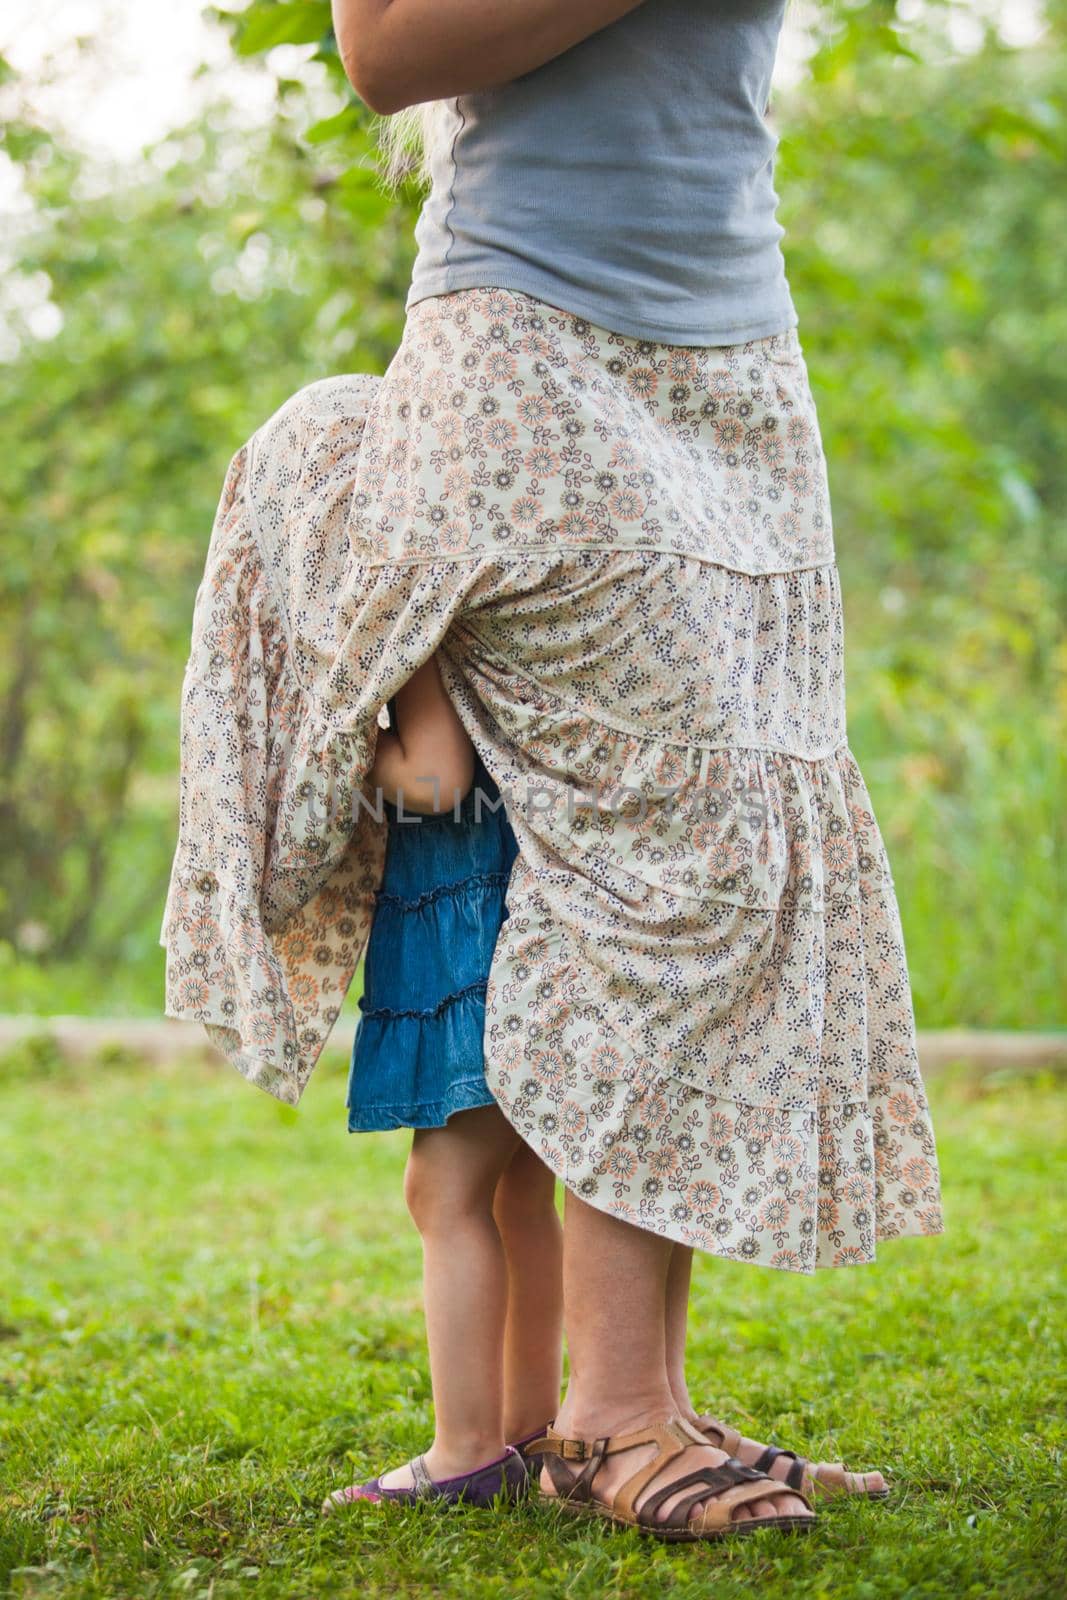 Little girl hids under a mother's skirt